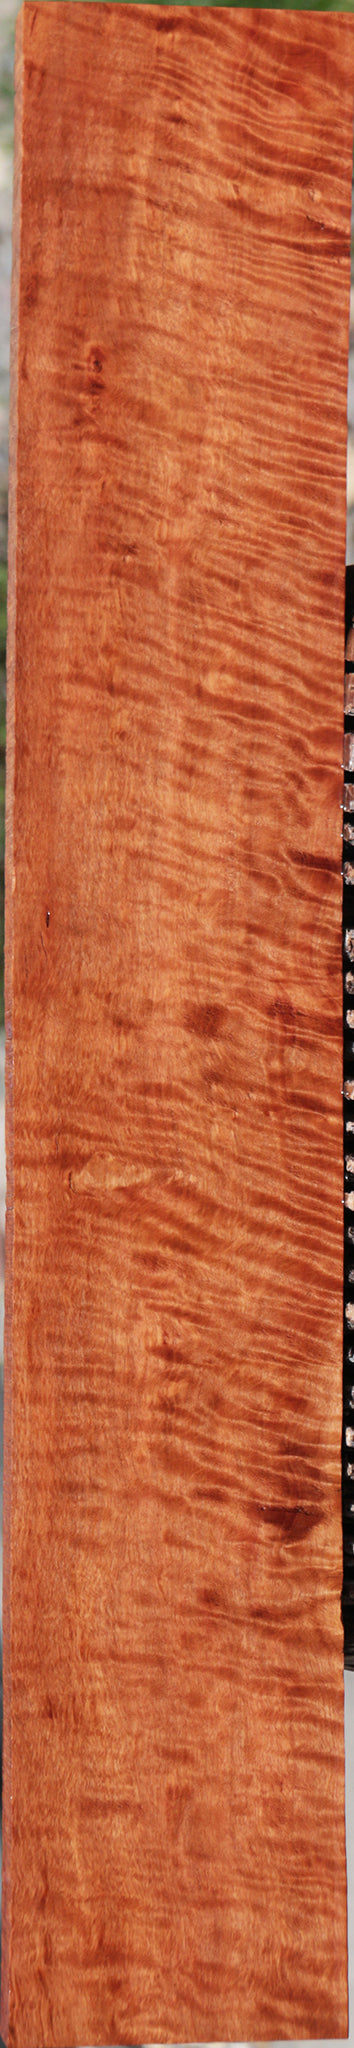 Exhibition Rambutan Lumber